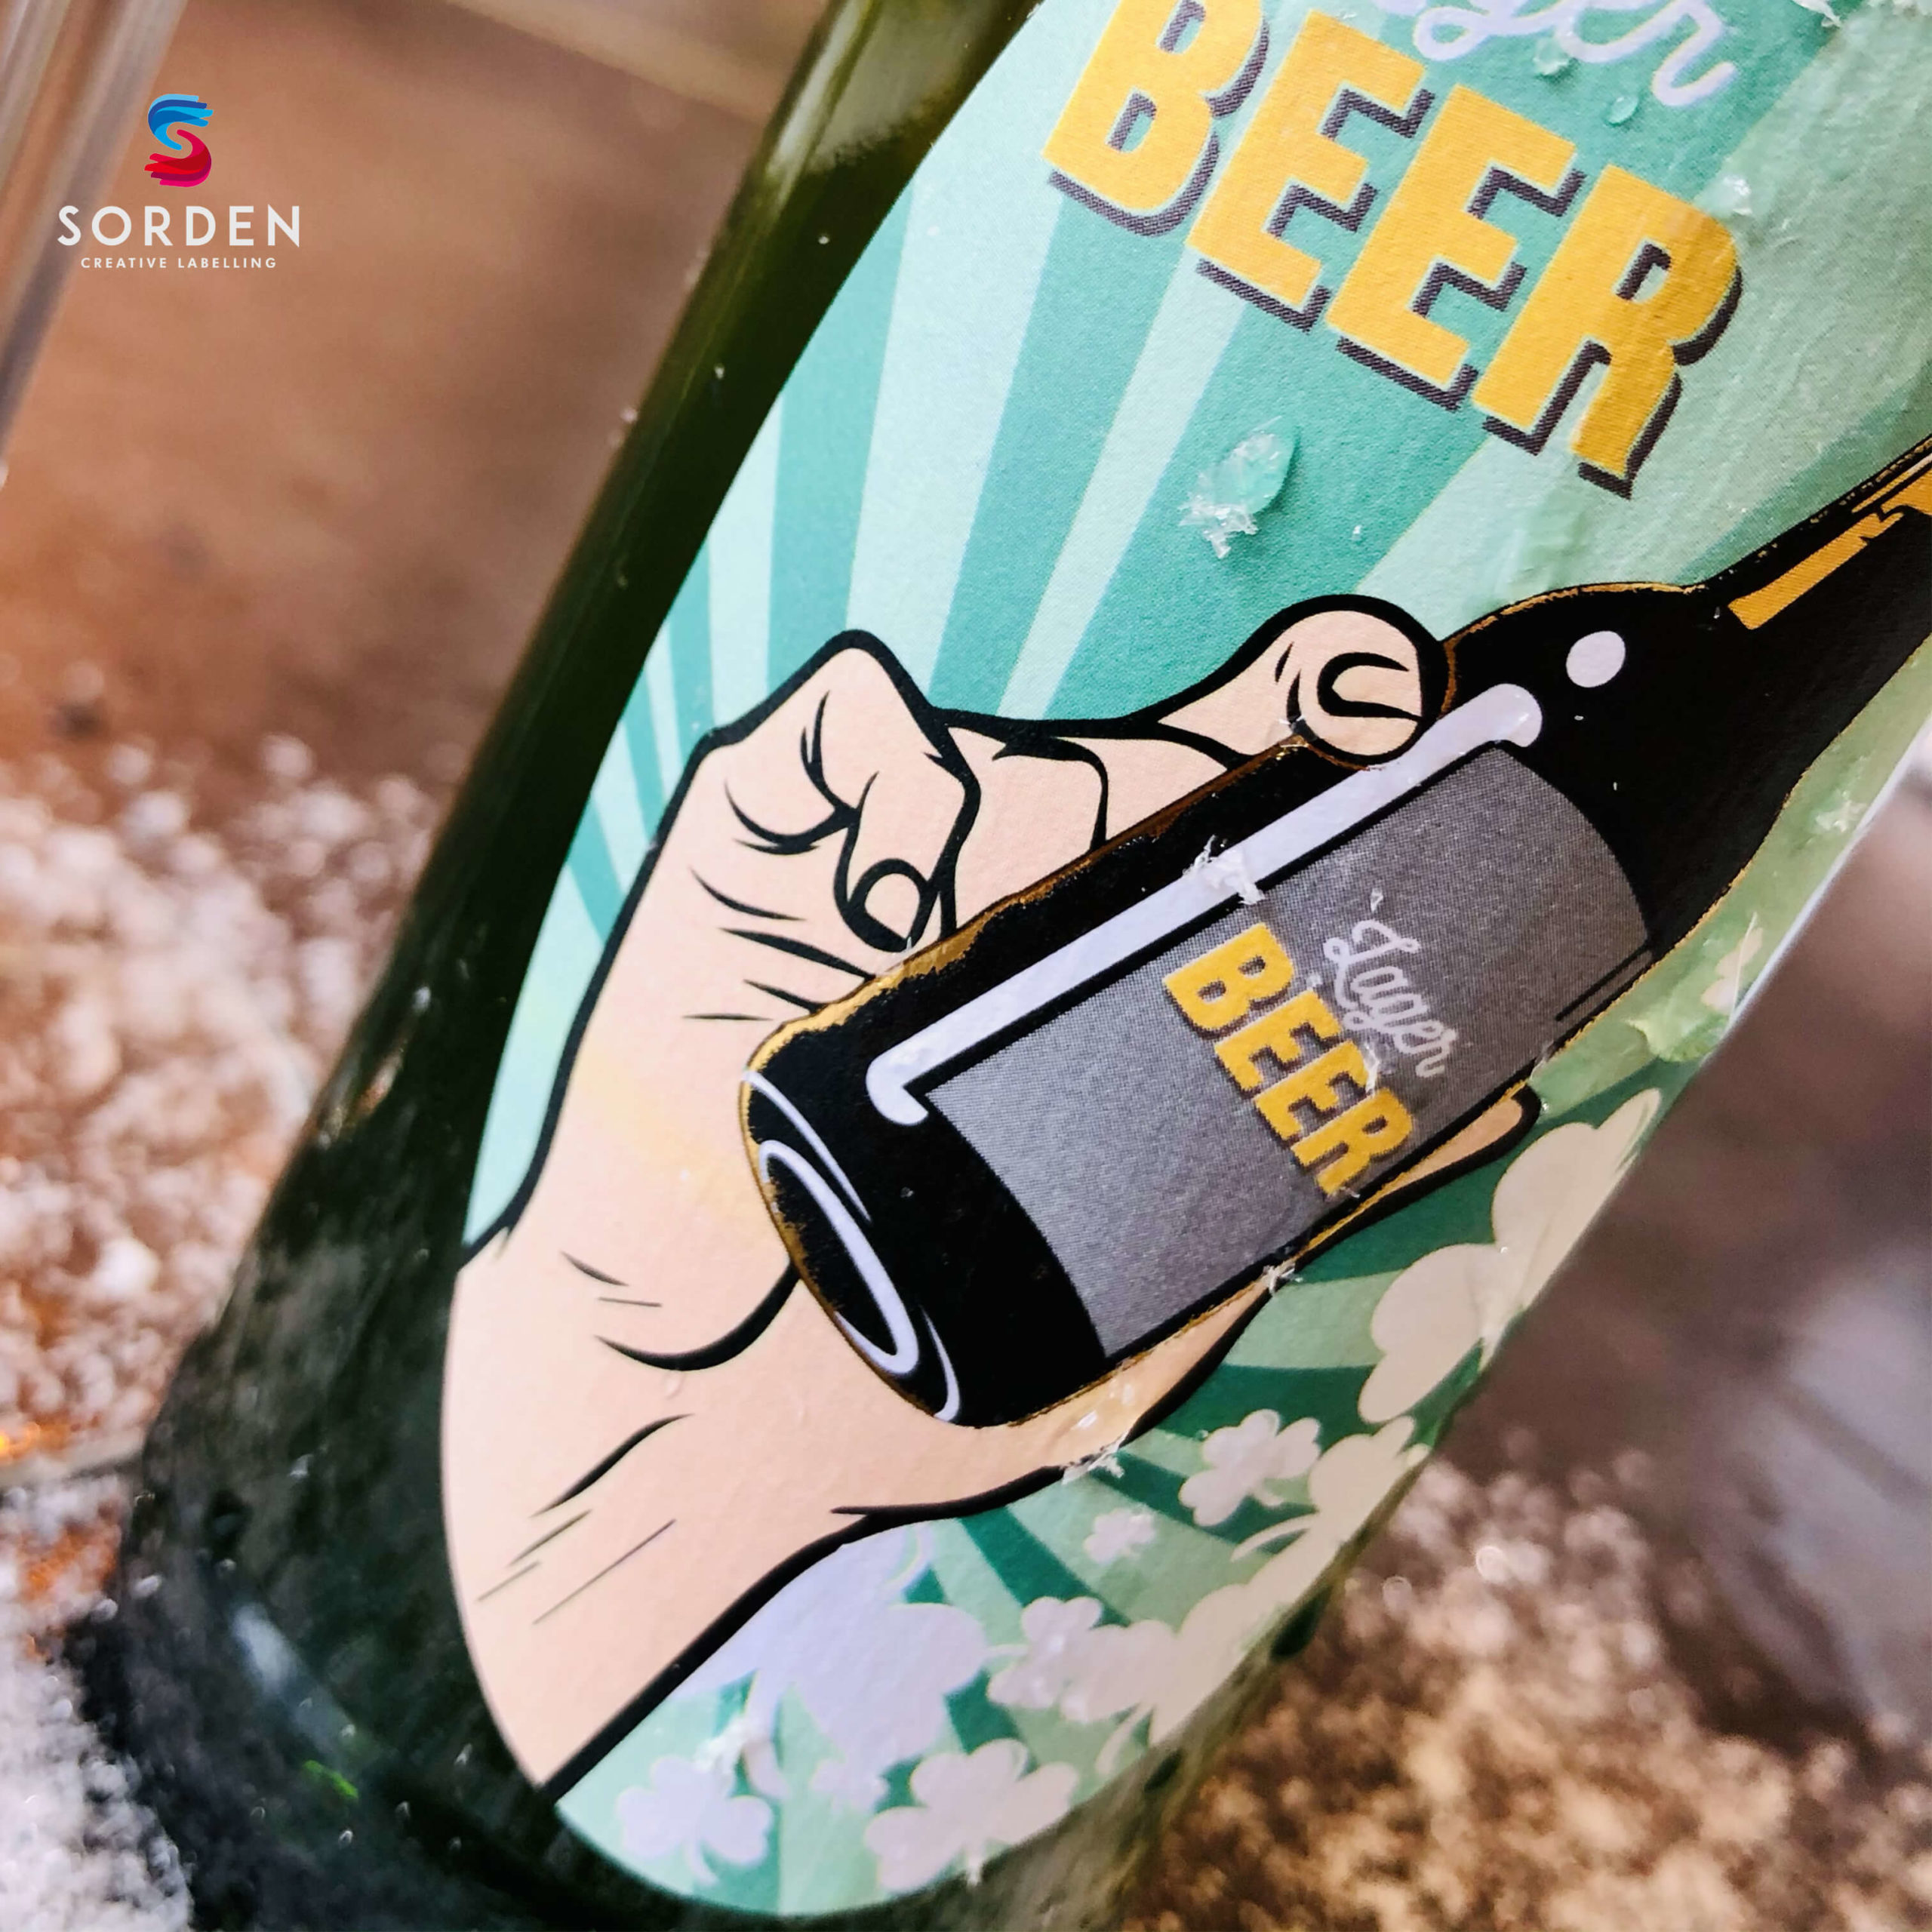 Étiquette de bière 100% personnalisée et unique - Sorden